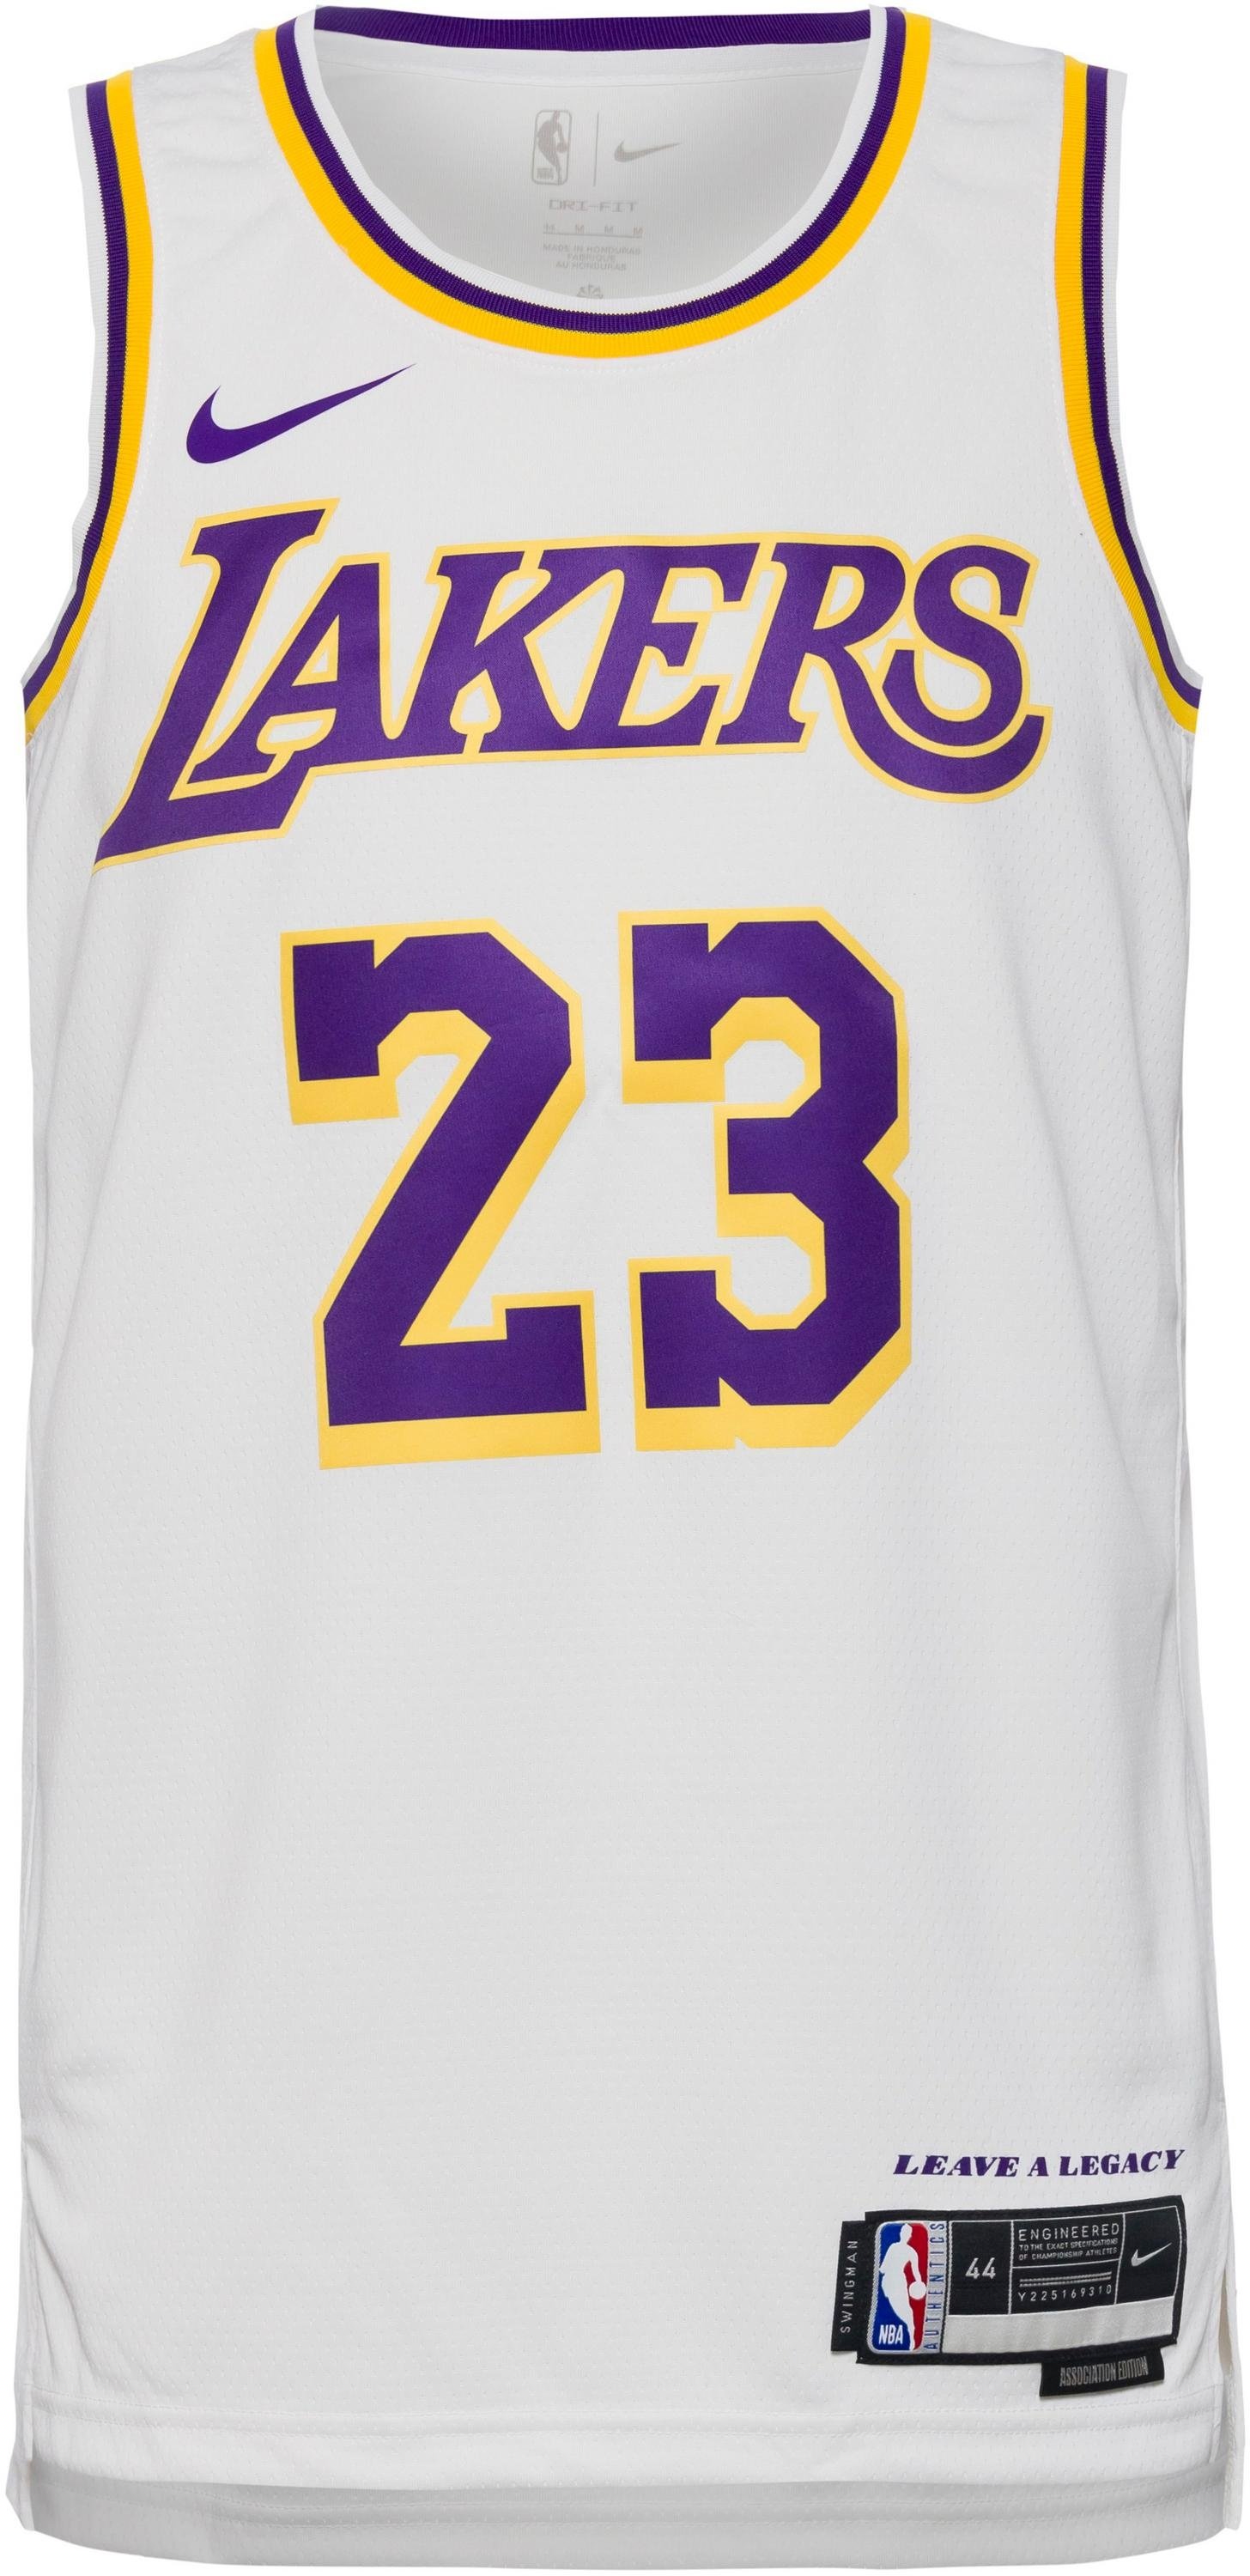 Nike LeBron James Los Angeles Lakers Spielertrikot Herren in weiß, Größe M - weiß